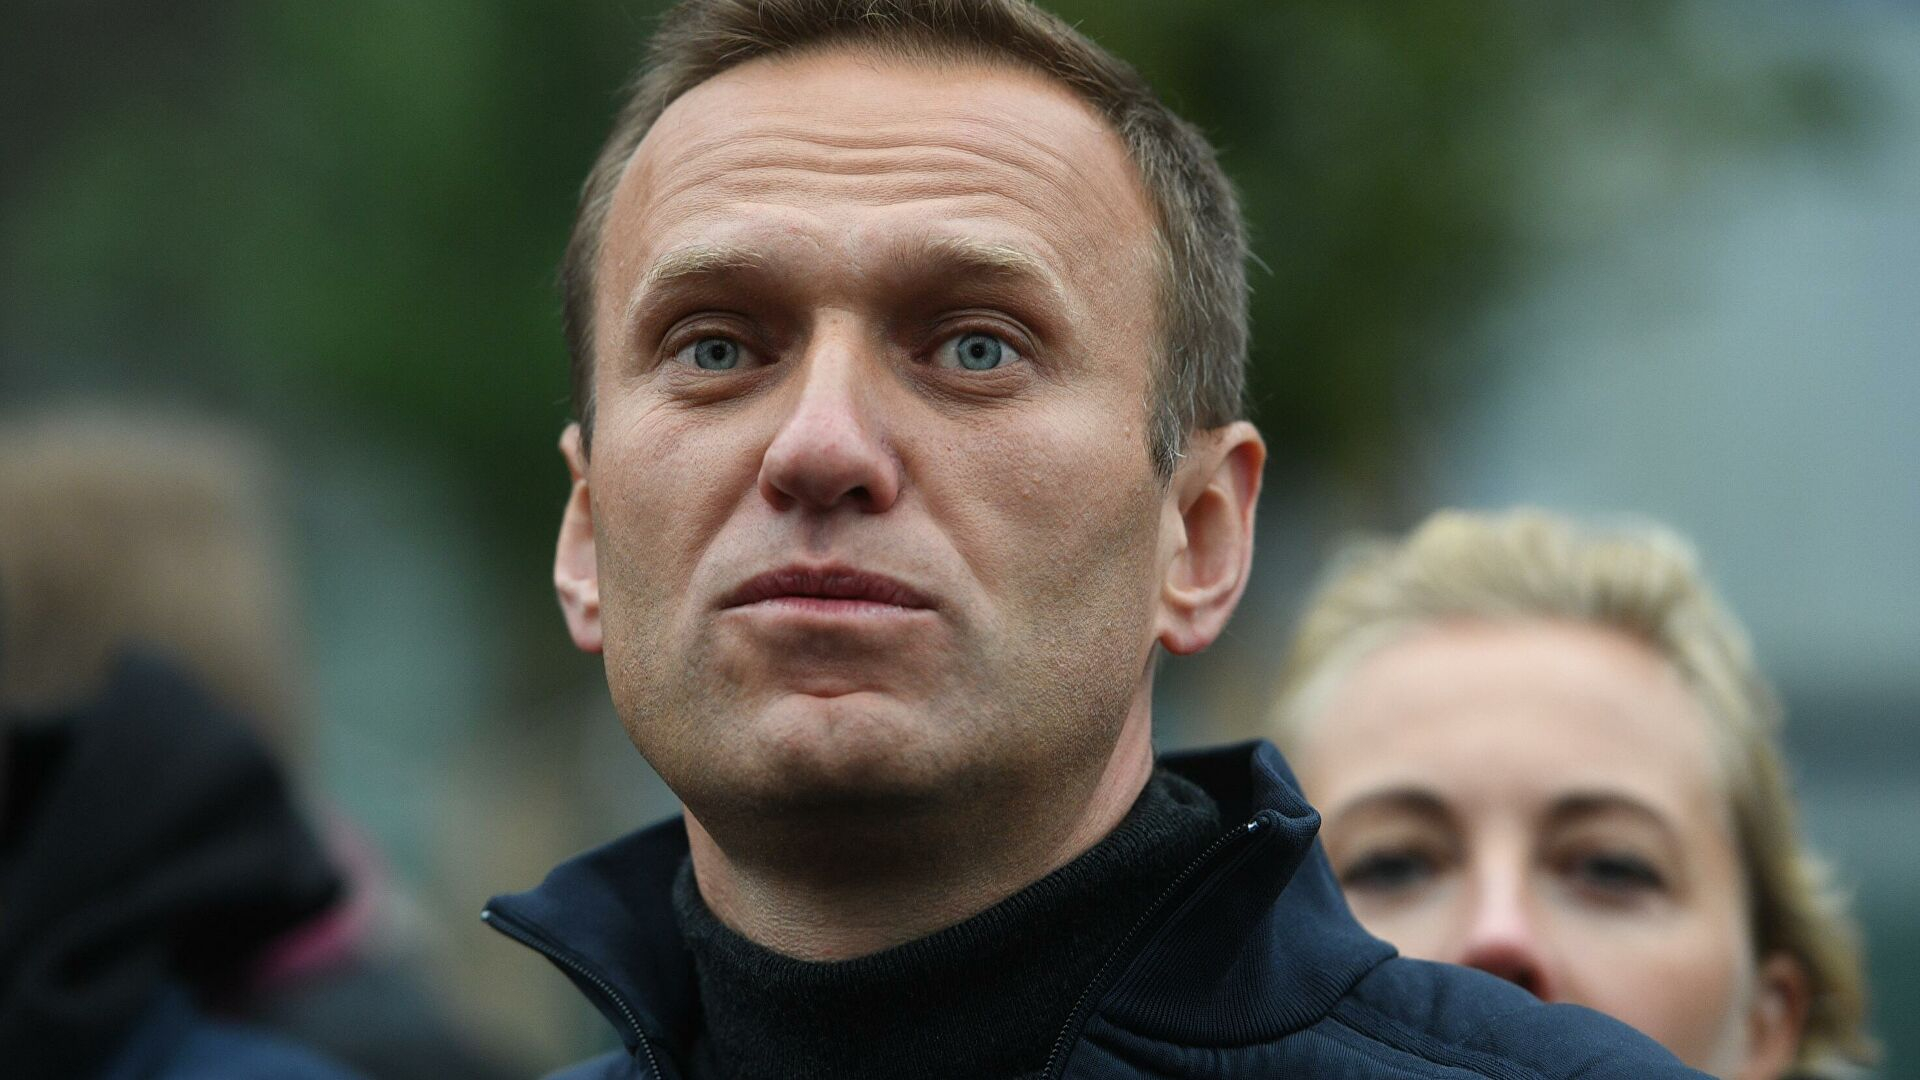 Aleksey Navalnı komadan ayıldı